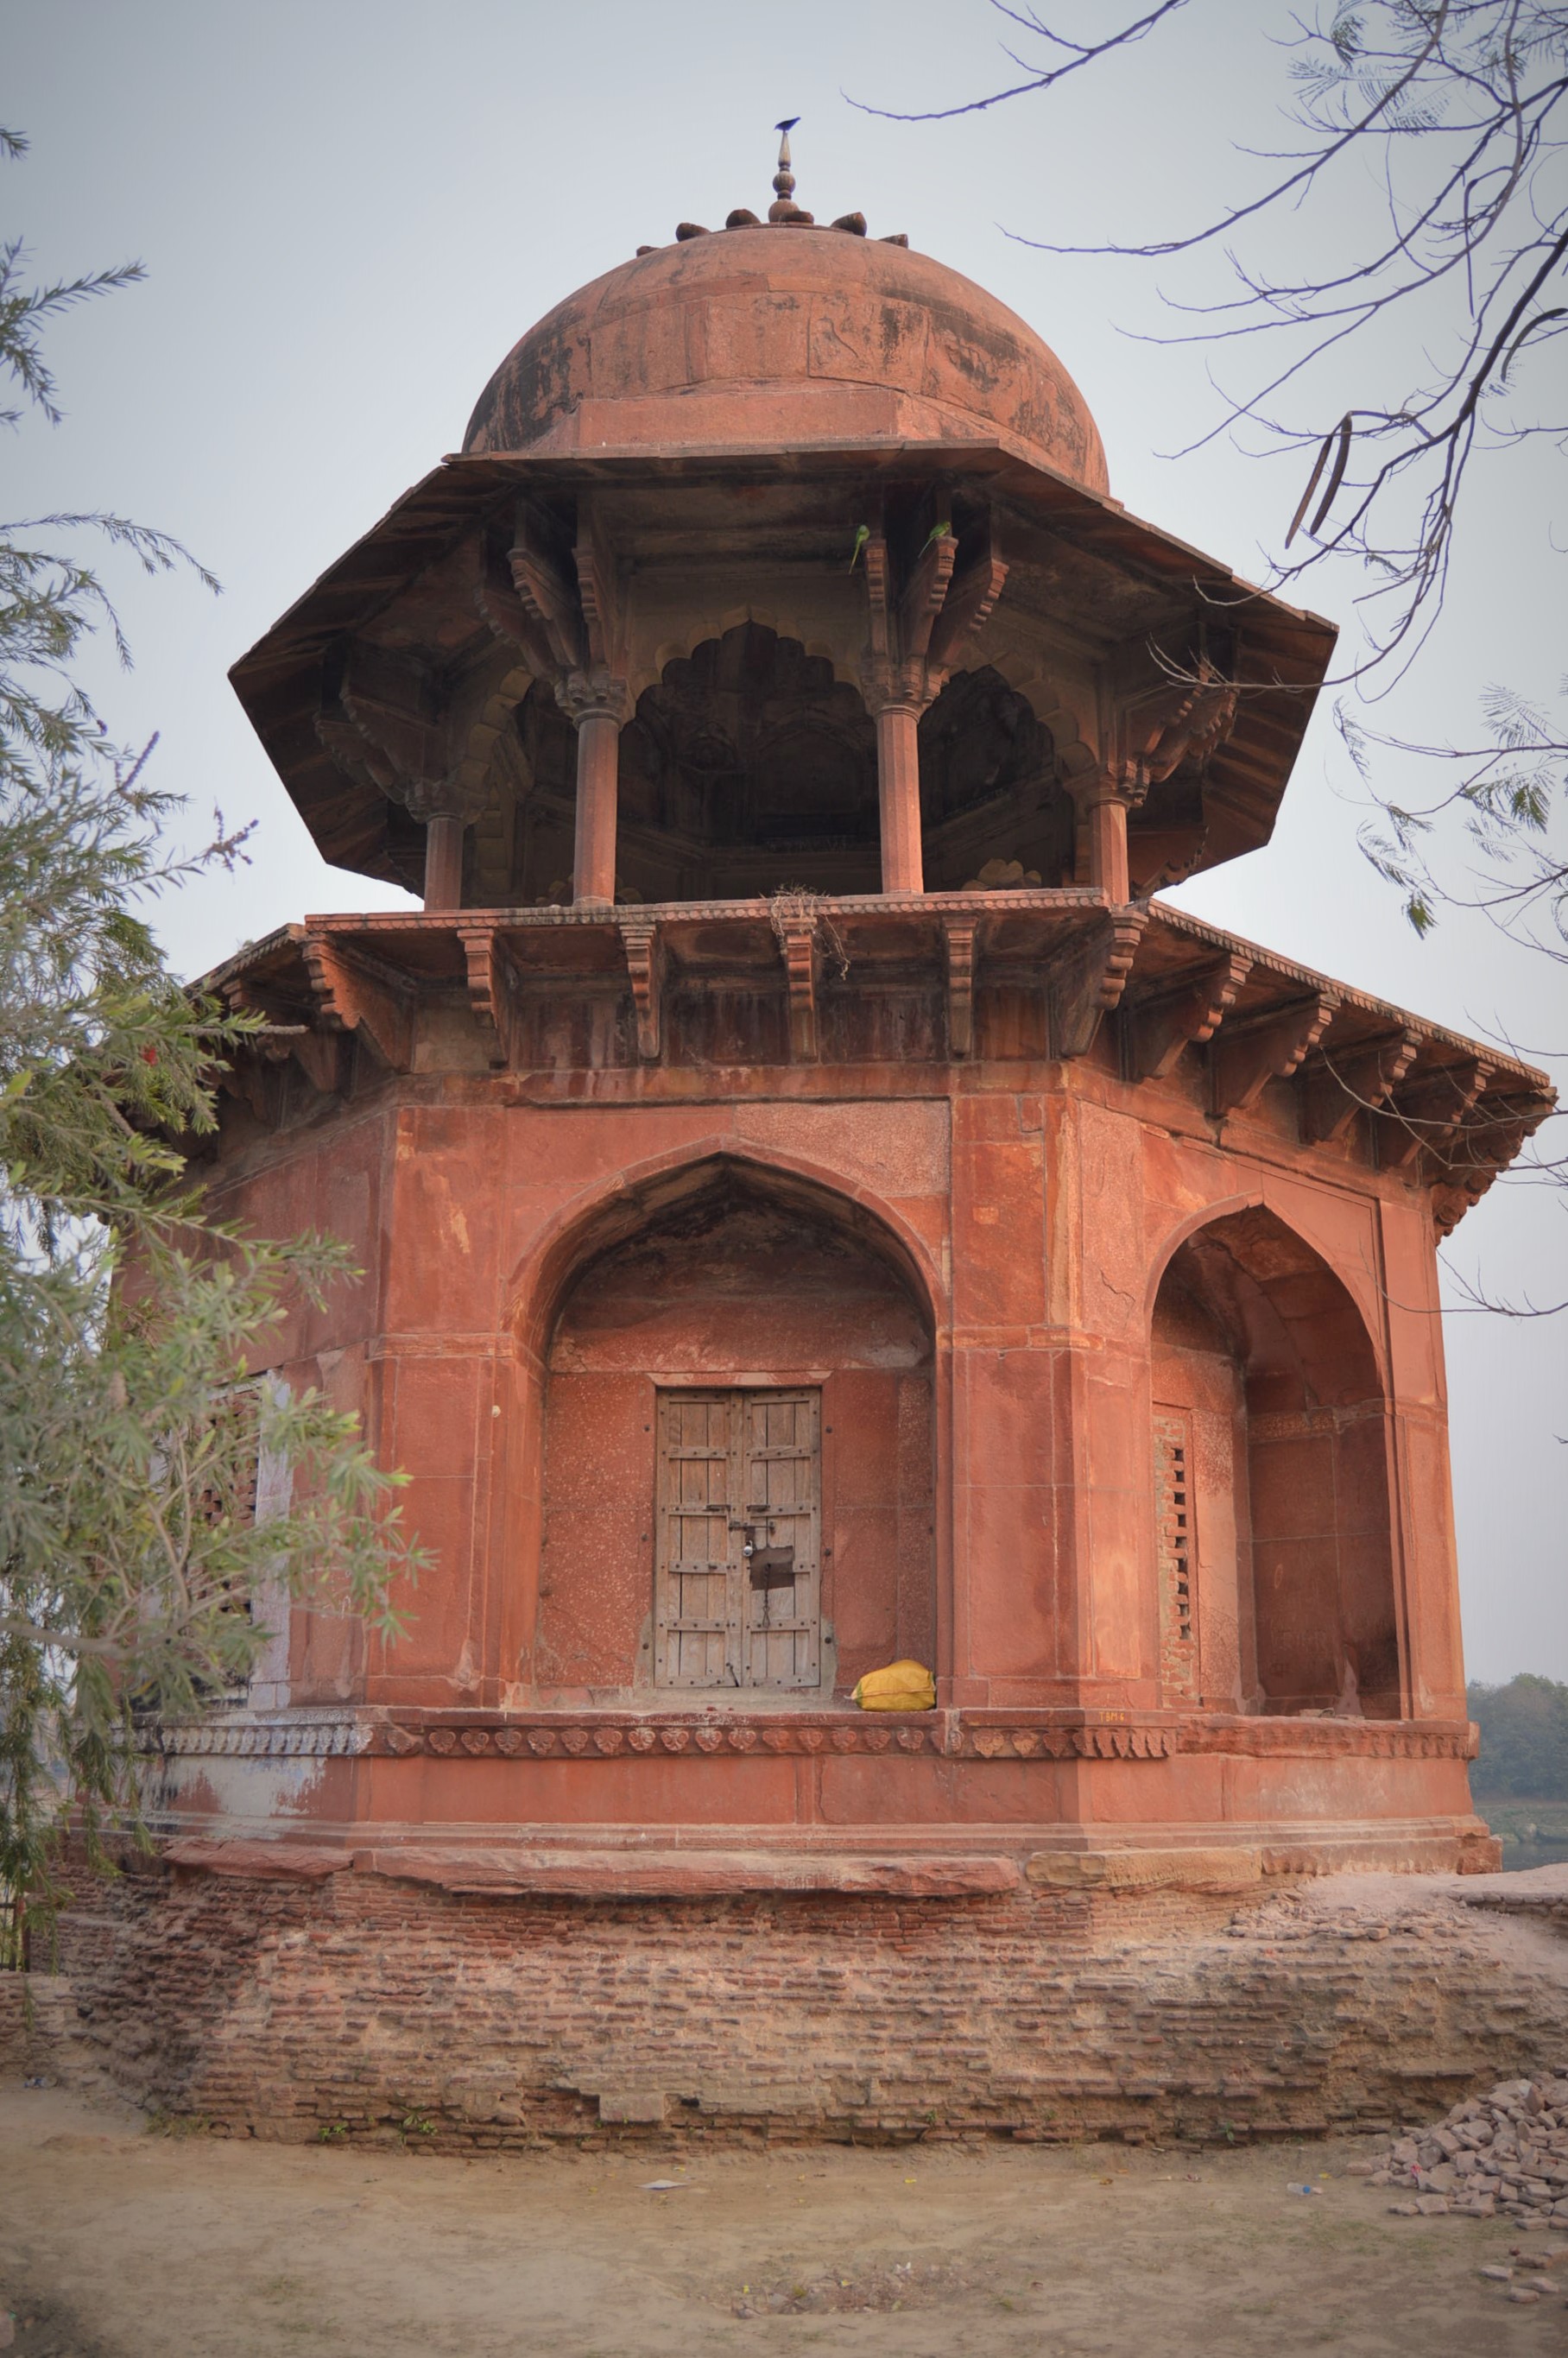 Garden Corner Tower circa 1650, Agra